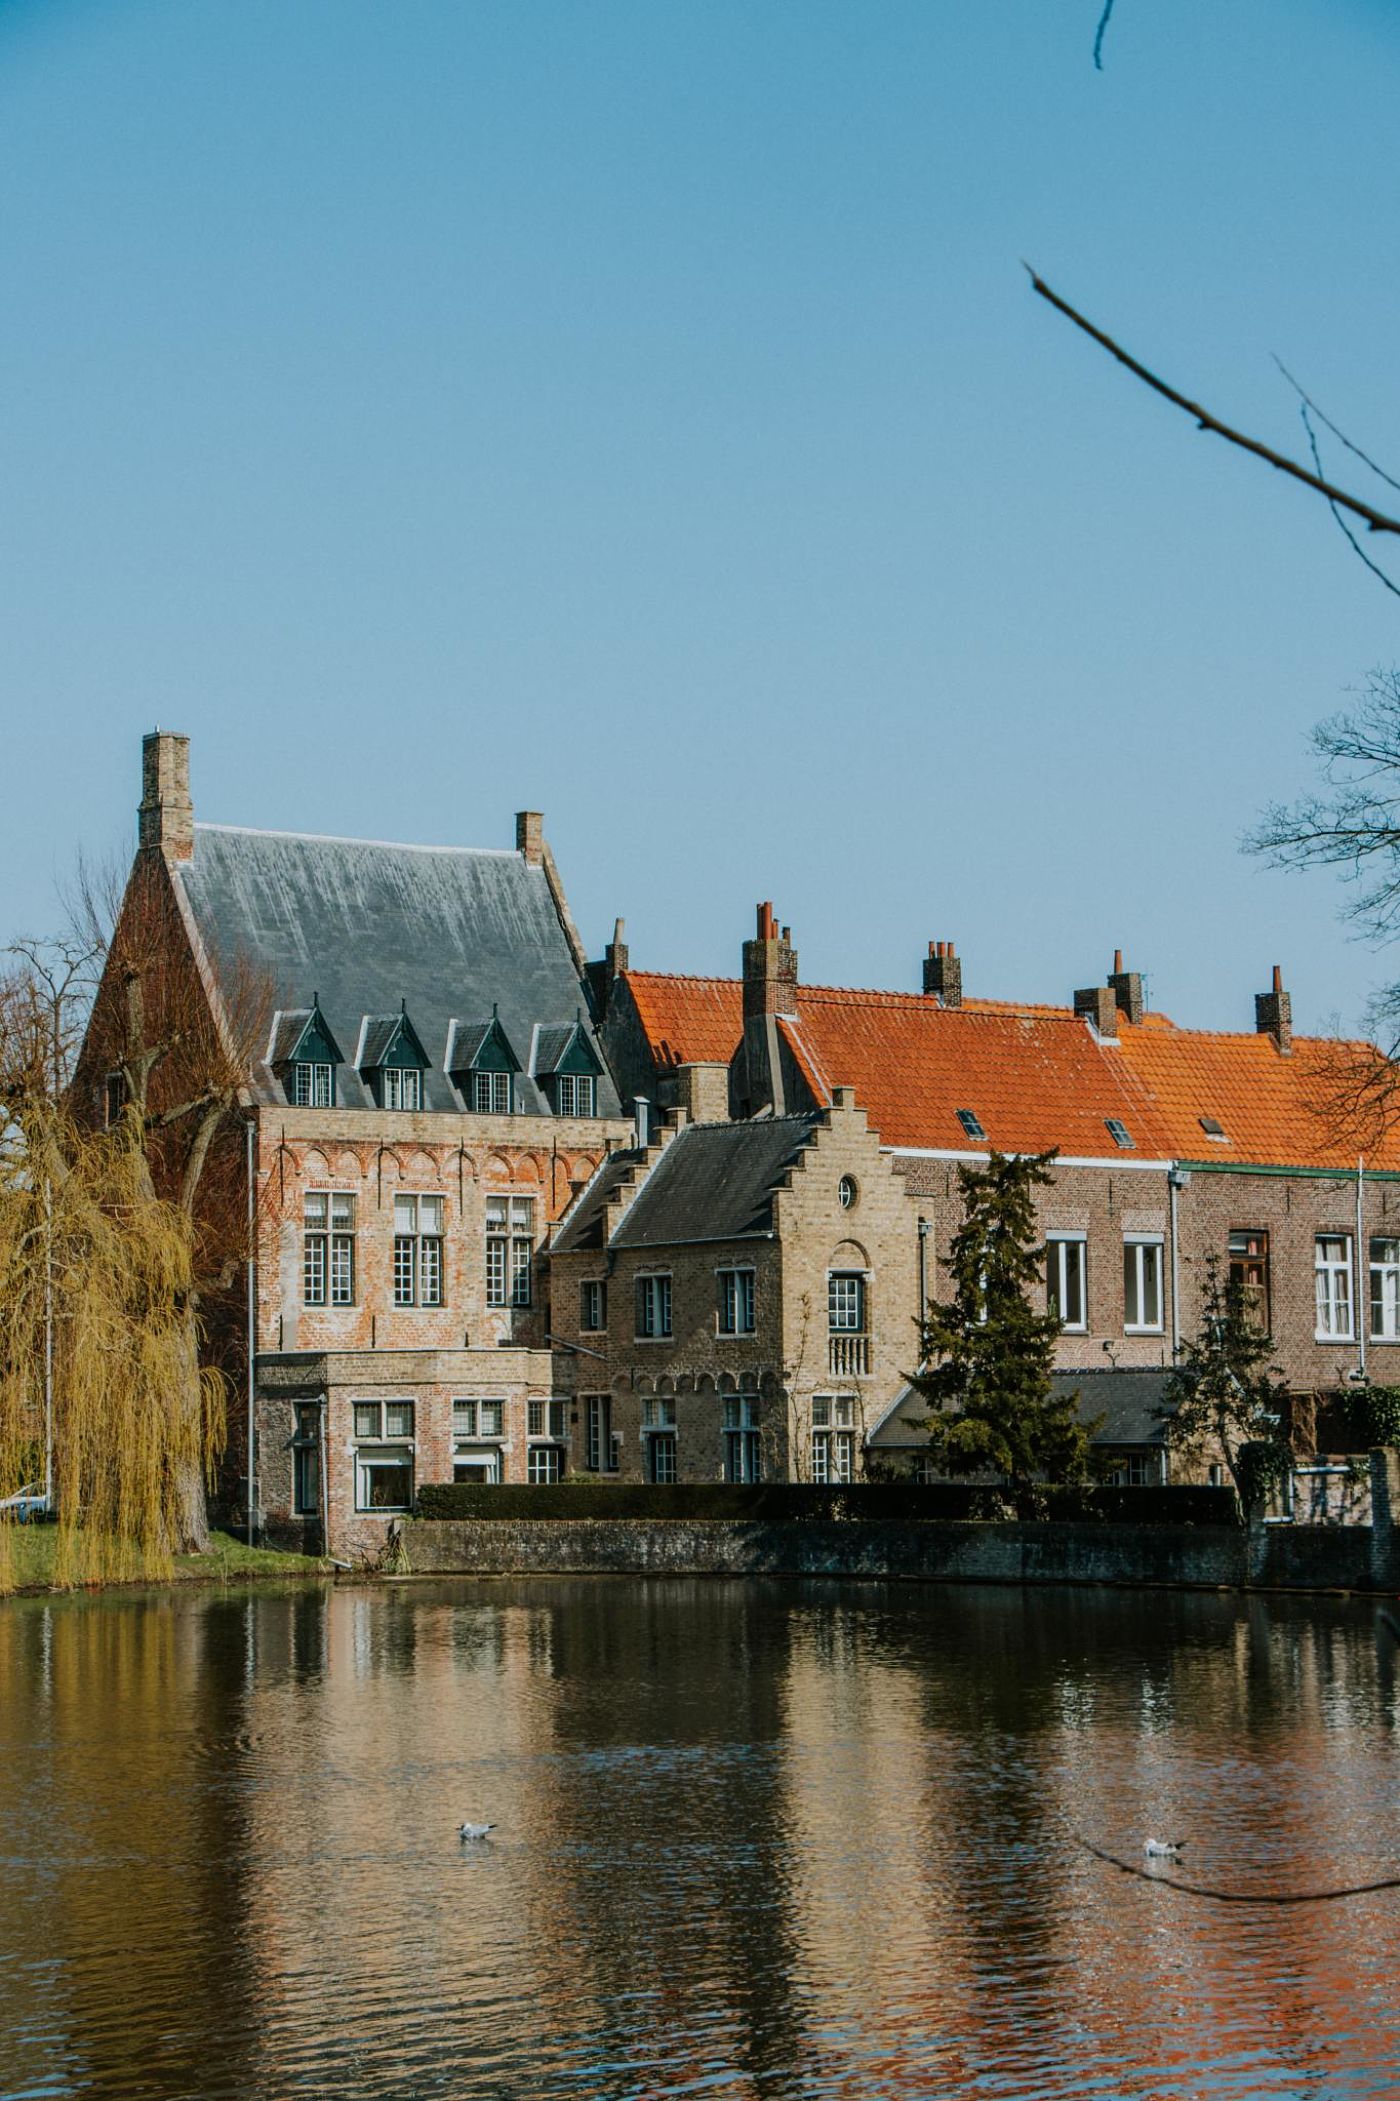 Bogdan Nanescu thanh pho Bruges opt - 10 thành phố thân thiện nhất thế giới cho bạn chuyến trải nghiệm đáng nhớ